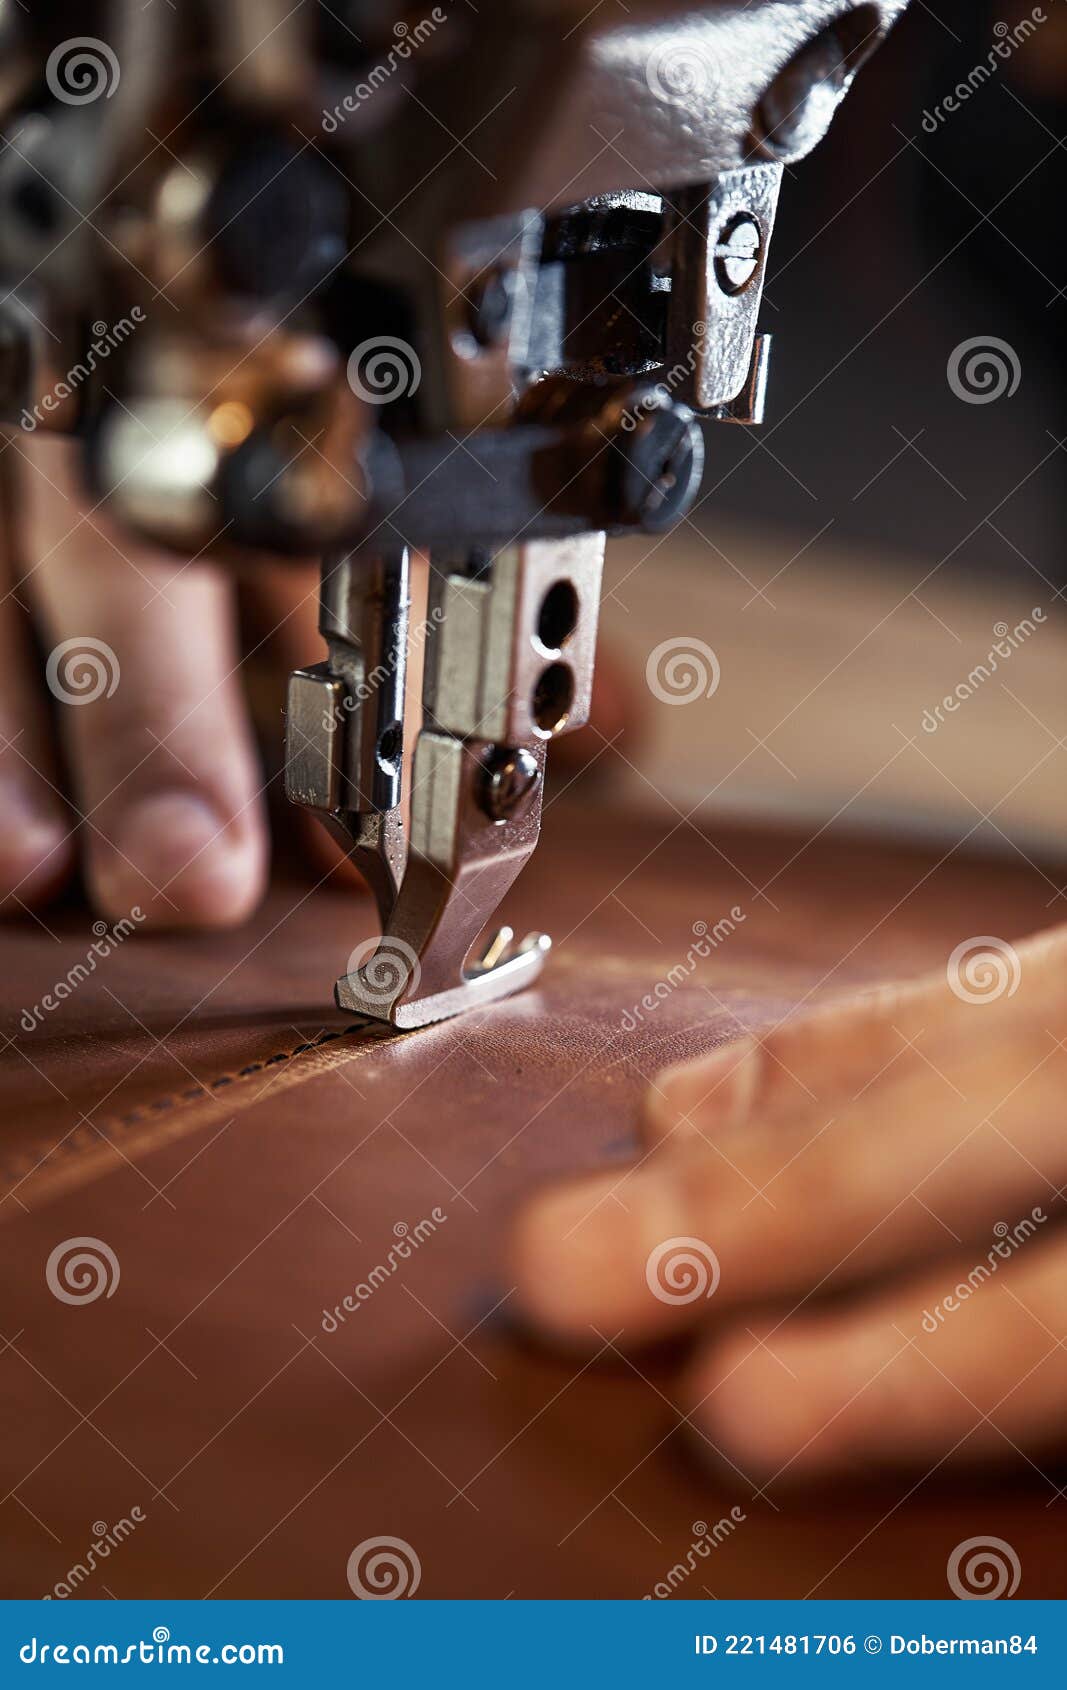 Nähmaschine / Leder nähen mit einer Nähmaschine Stock Photo